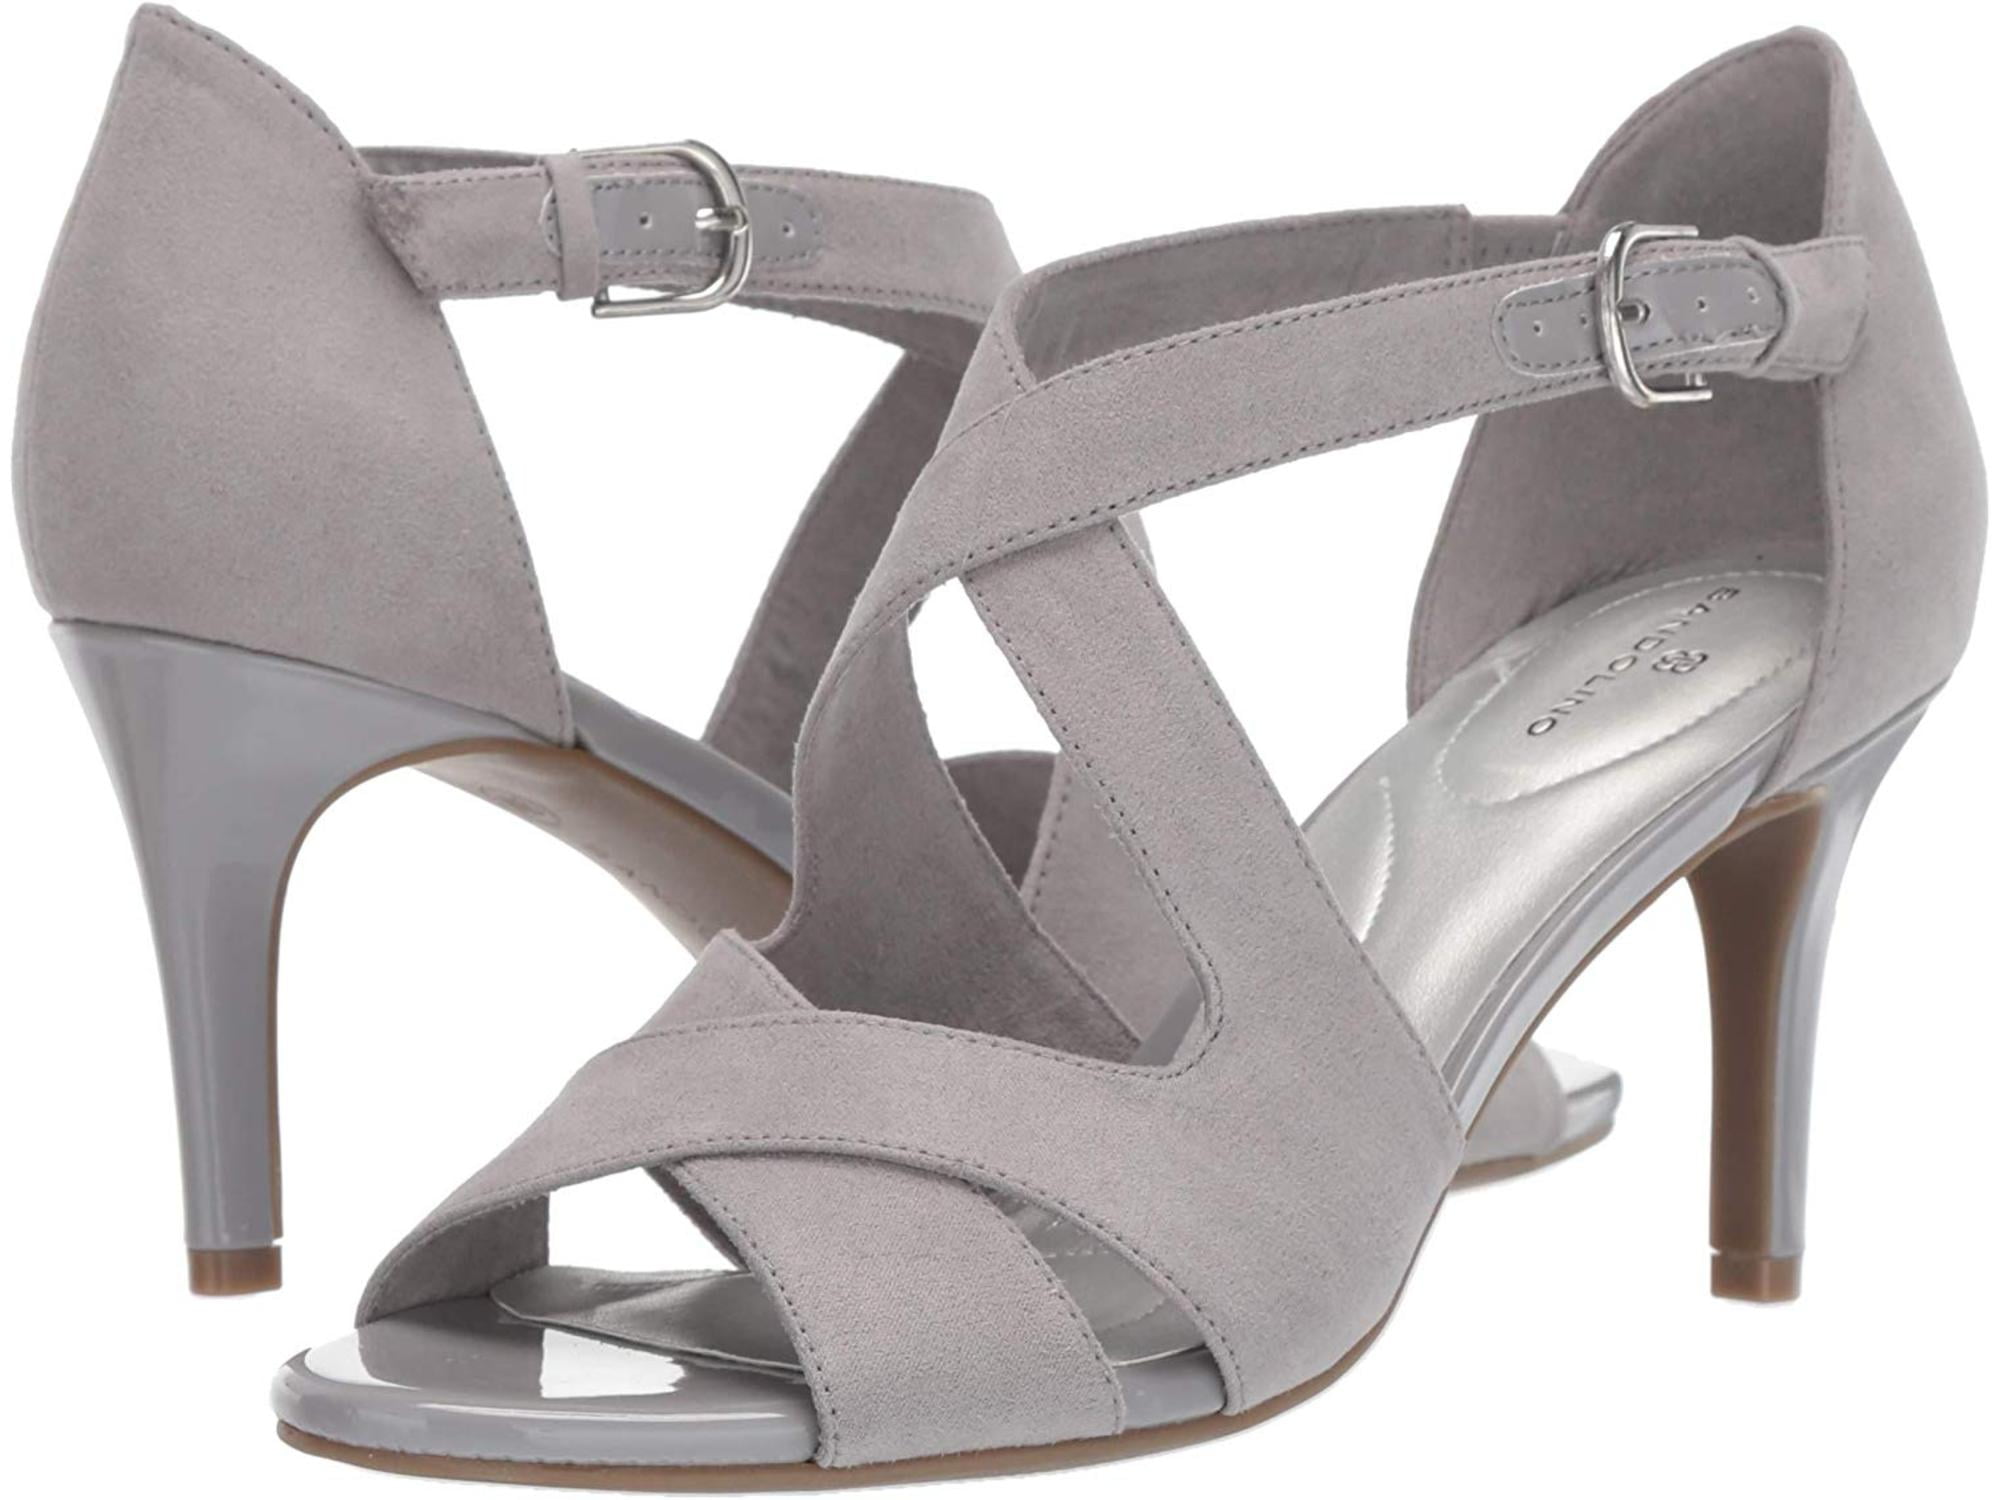 buy heels online canada